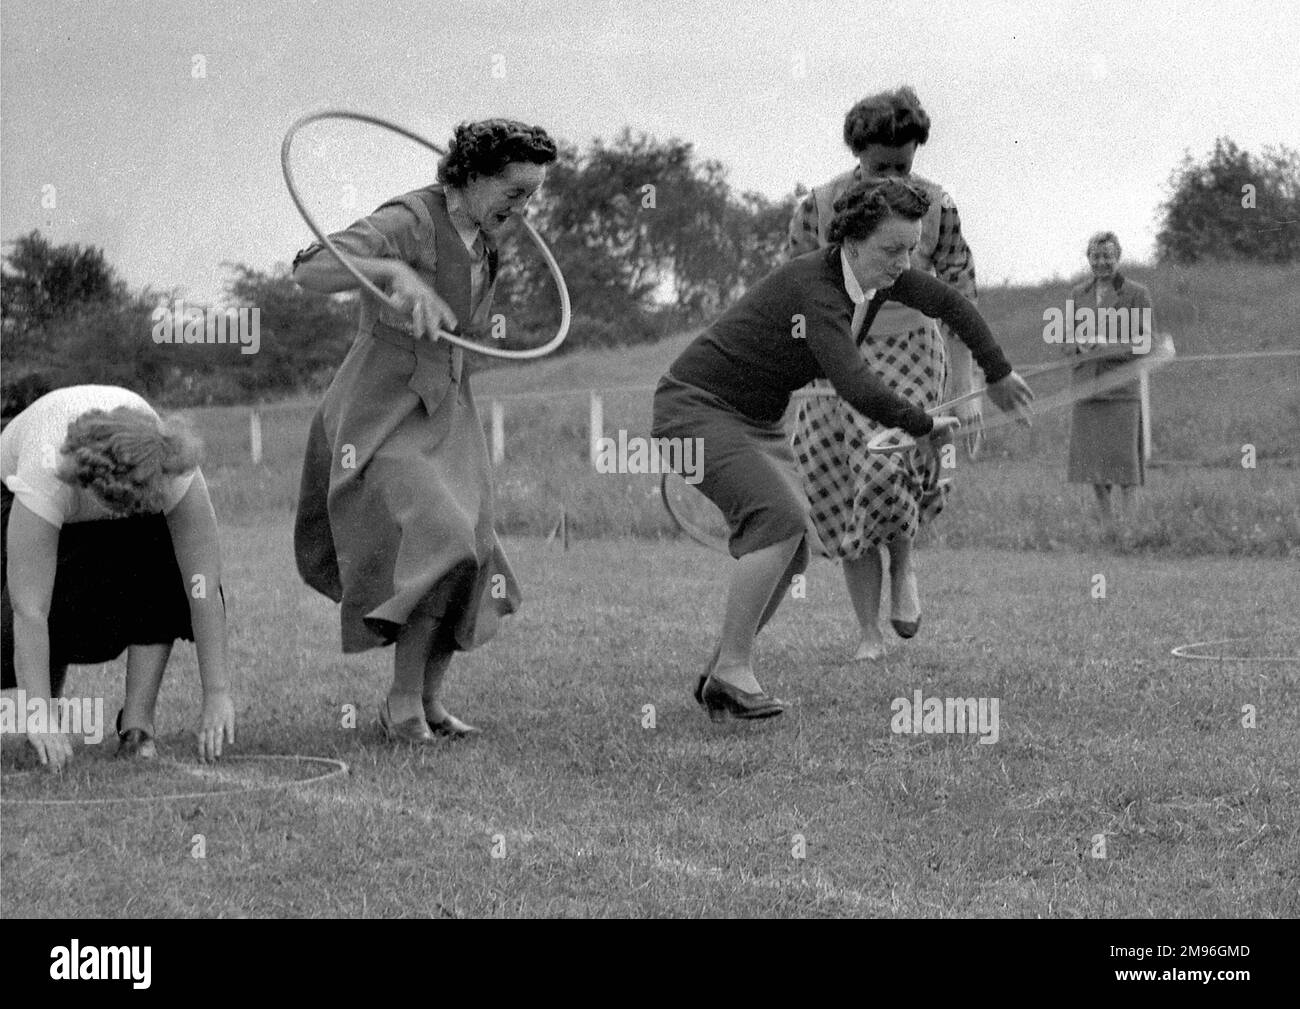 Quatre femmes qui font une course avec des paniers. Un spectateur regarde, souriant, probablement content qu'elle n'ait pas à participer! Banque D'Images